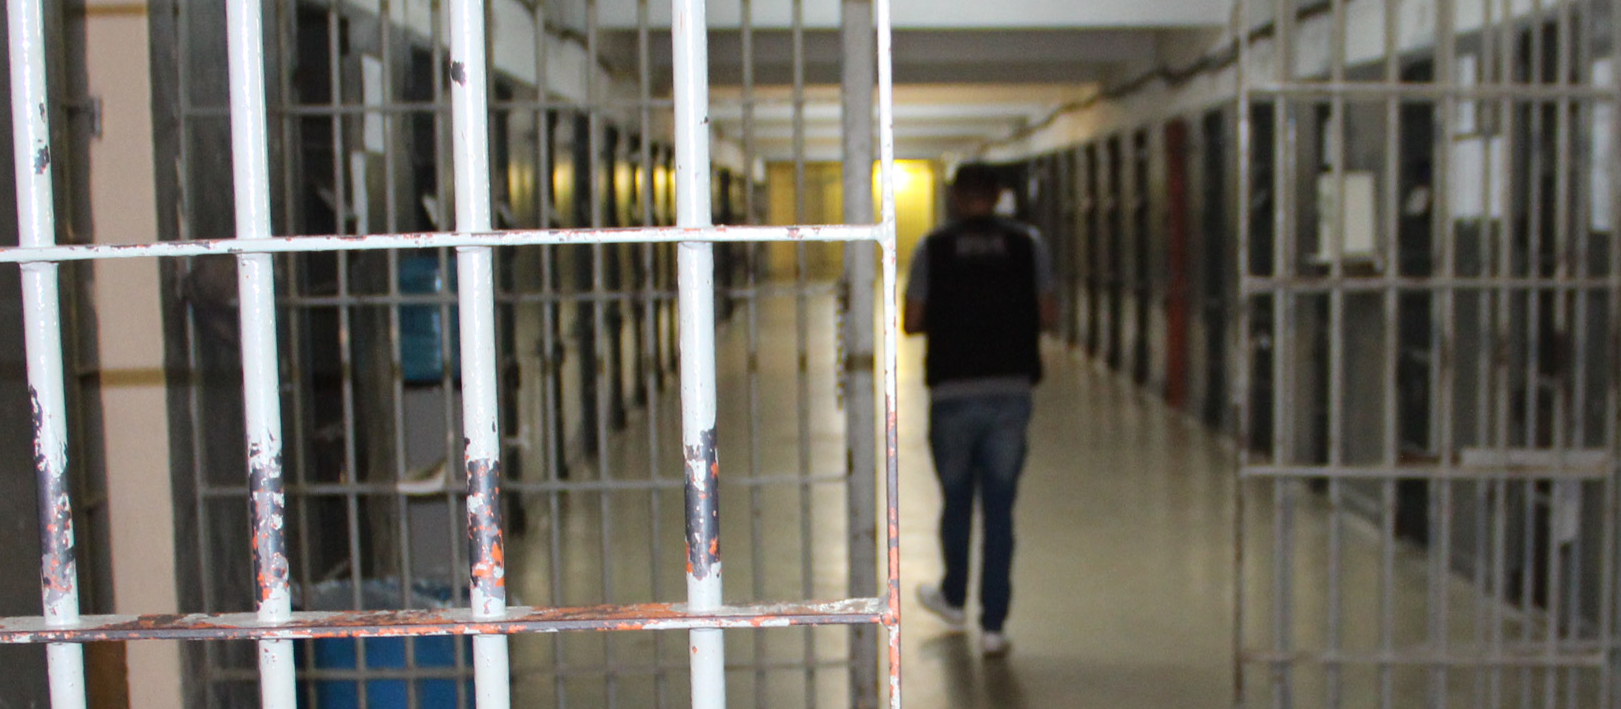 14 presos estão evadidos após saídas temporárias